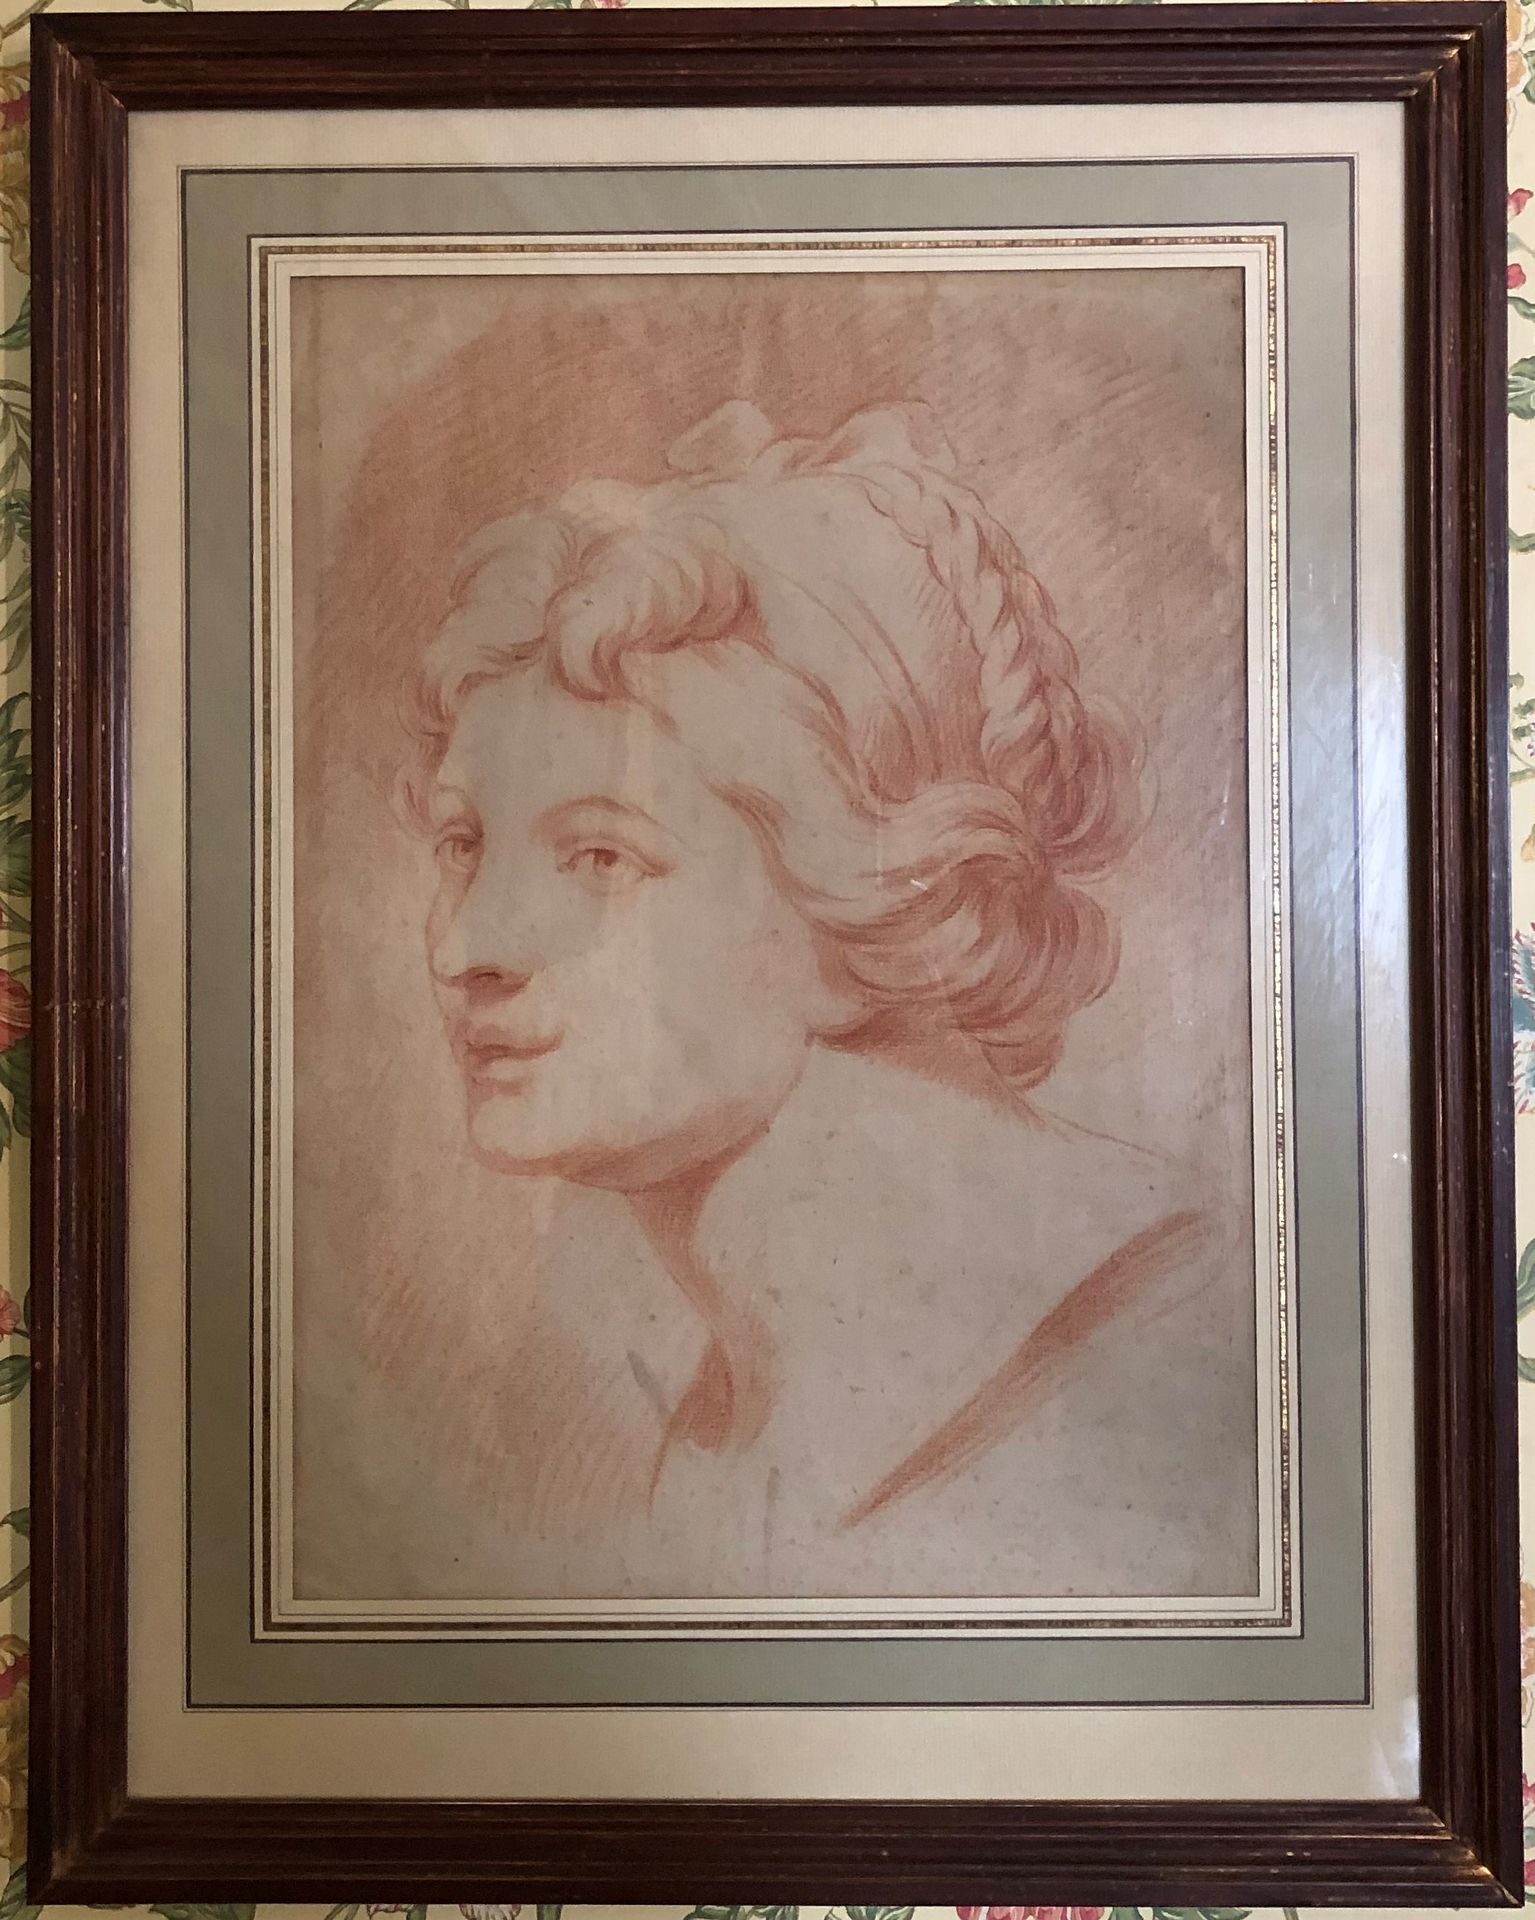 Null 法国学校

一个女人的肖像轮廓

18世纪末19世纪初

纸上谈兵

小事故和缺失部件

39,5 x 28,5厘米，一目了然。

附上:

戴头巾的&hellip;